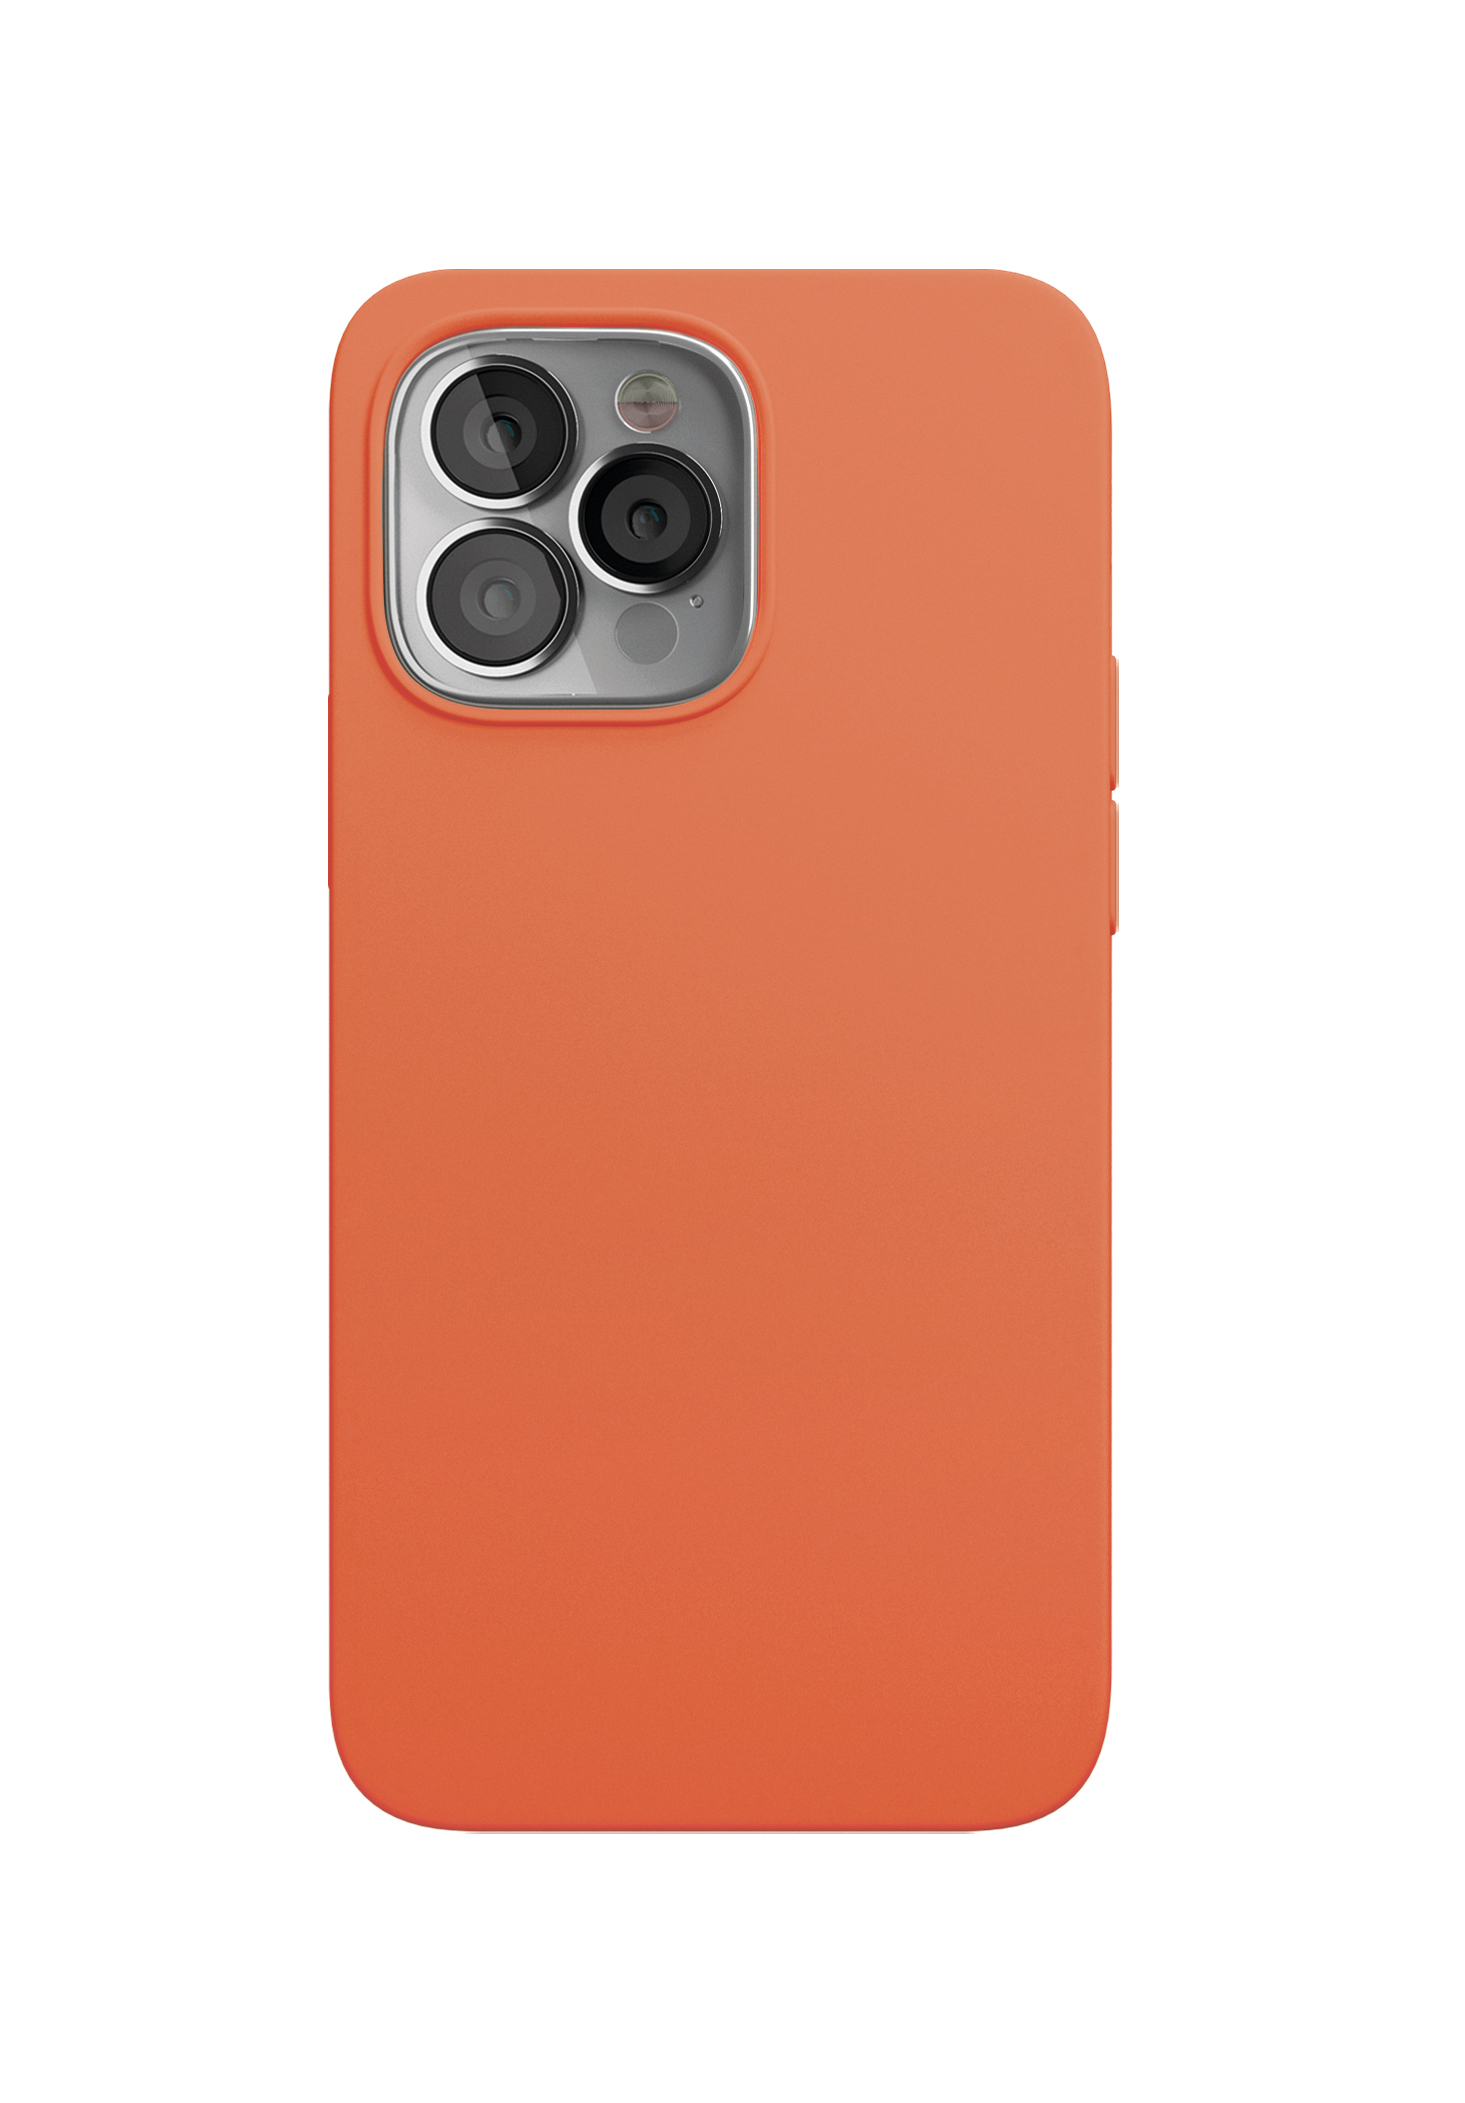 Фото — Чехол защитный vlp Silicone case with MagSafe для iPhone 13 Pro Max, оранжевый